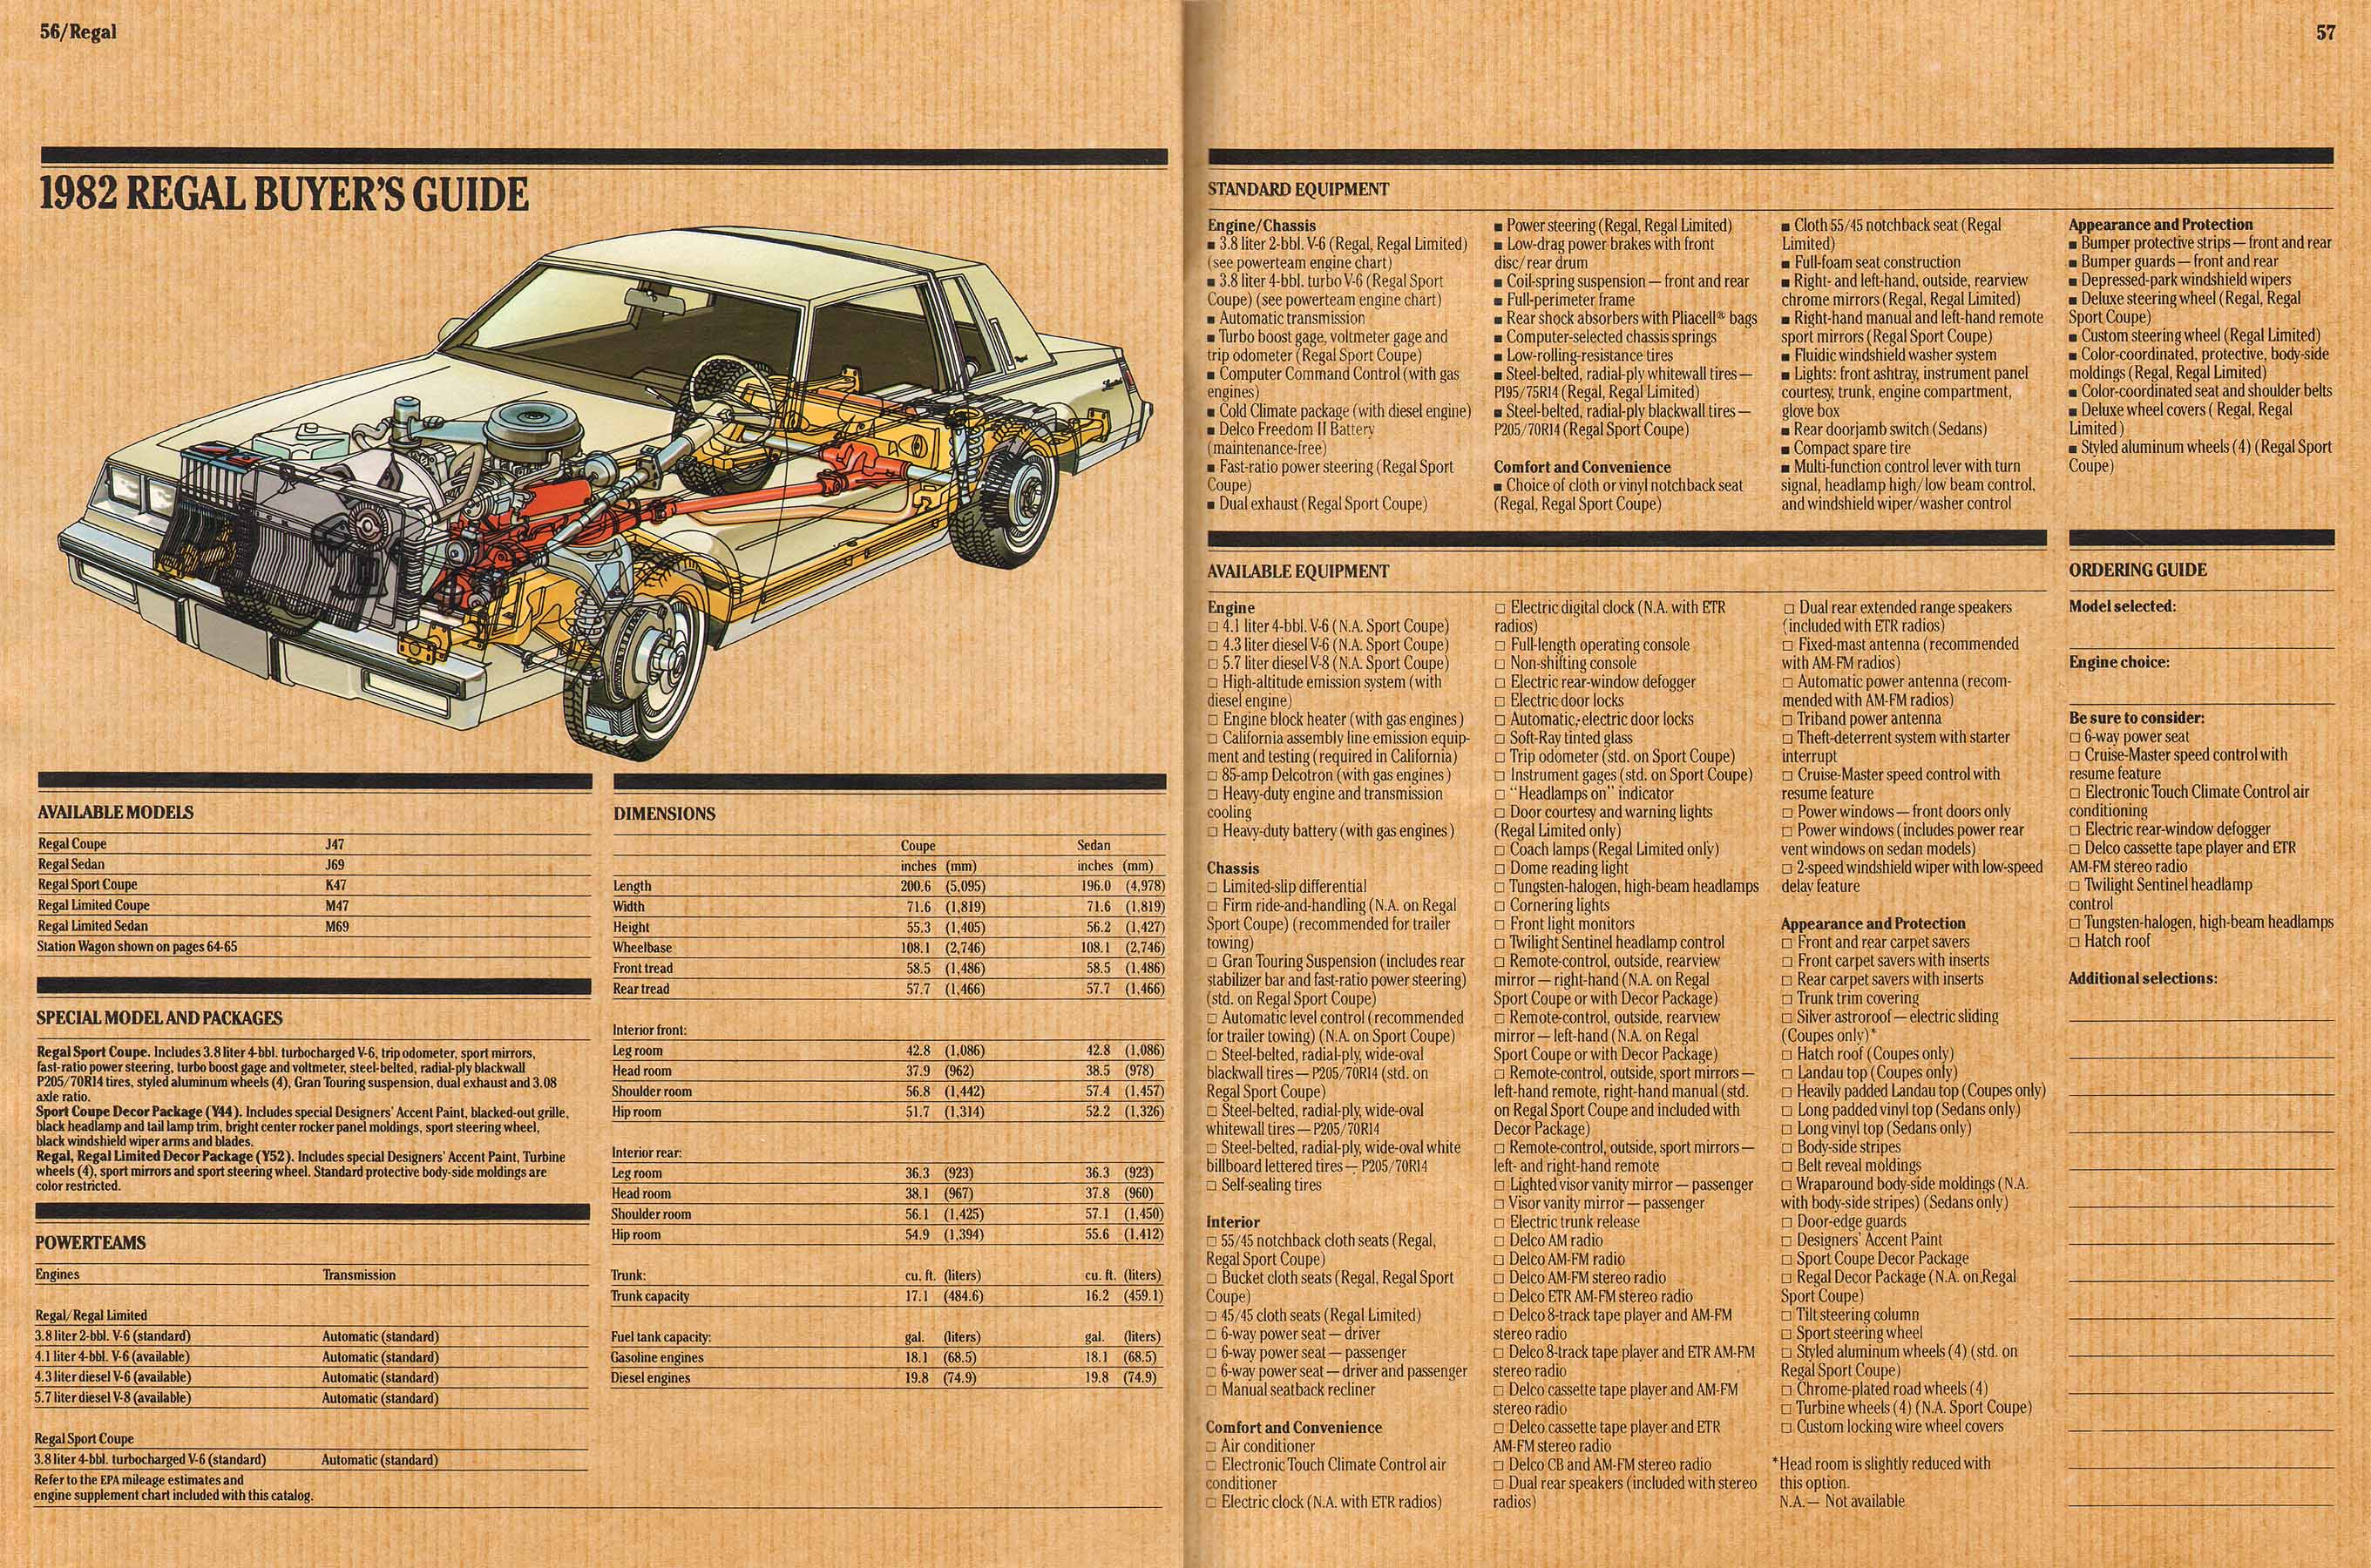 1982 Buick Full Line Prestige-56-57